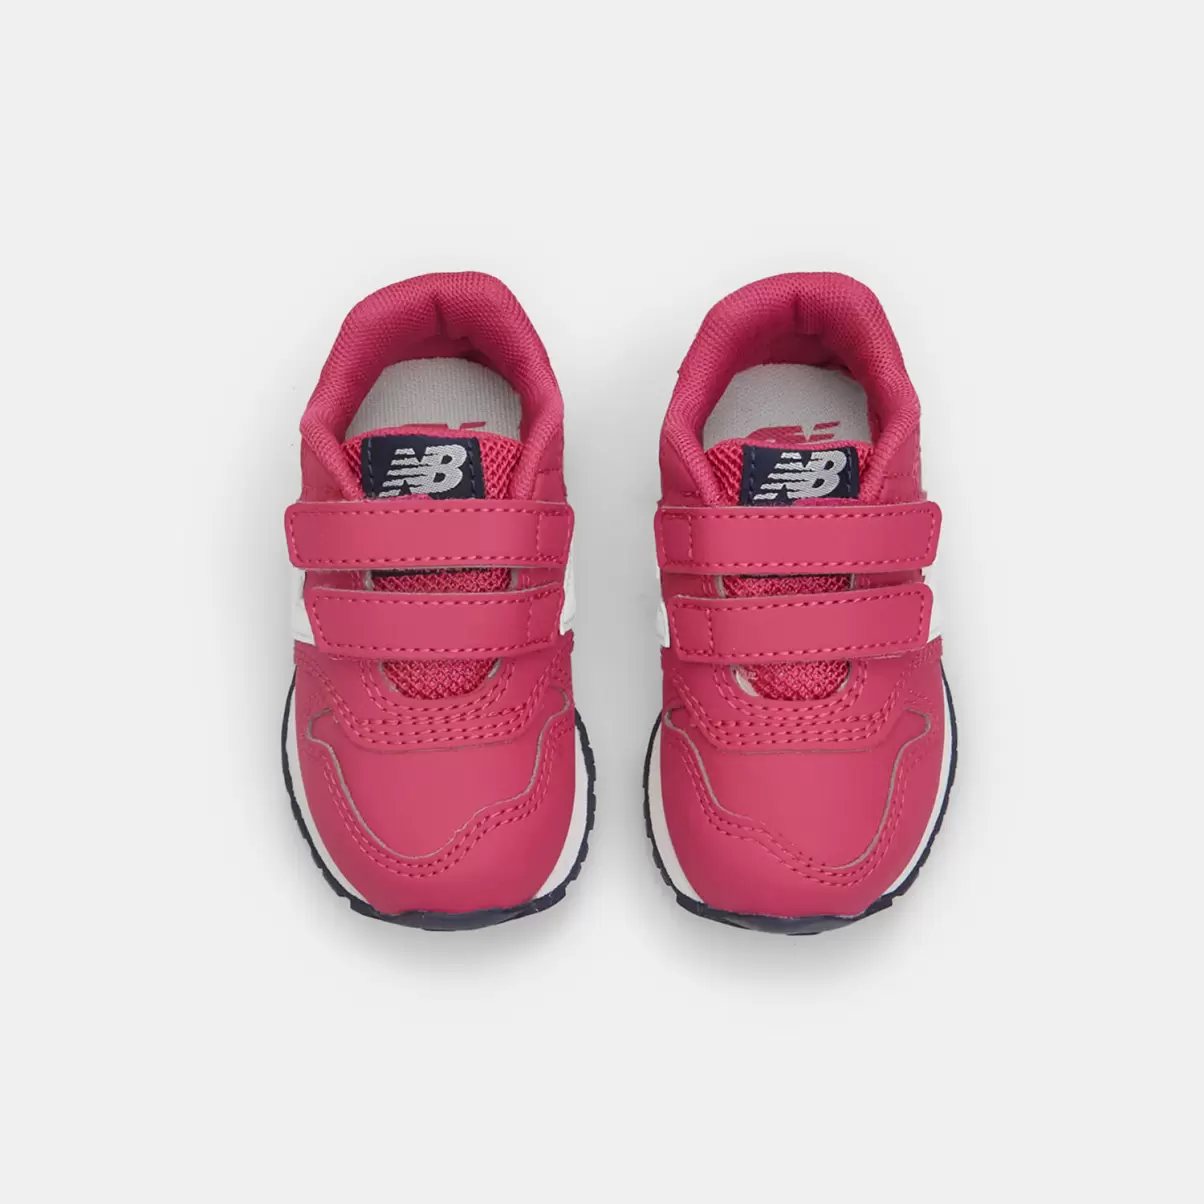 Bambini Scarpe Sportive Bata Rosa Efficienza Sneakers Primi Passi New Balance Con Strappi - 3